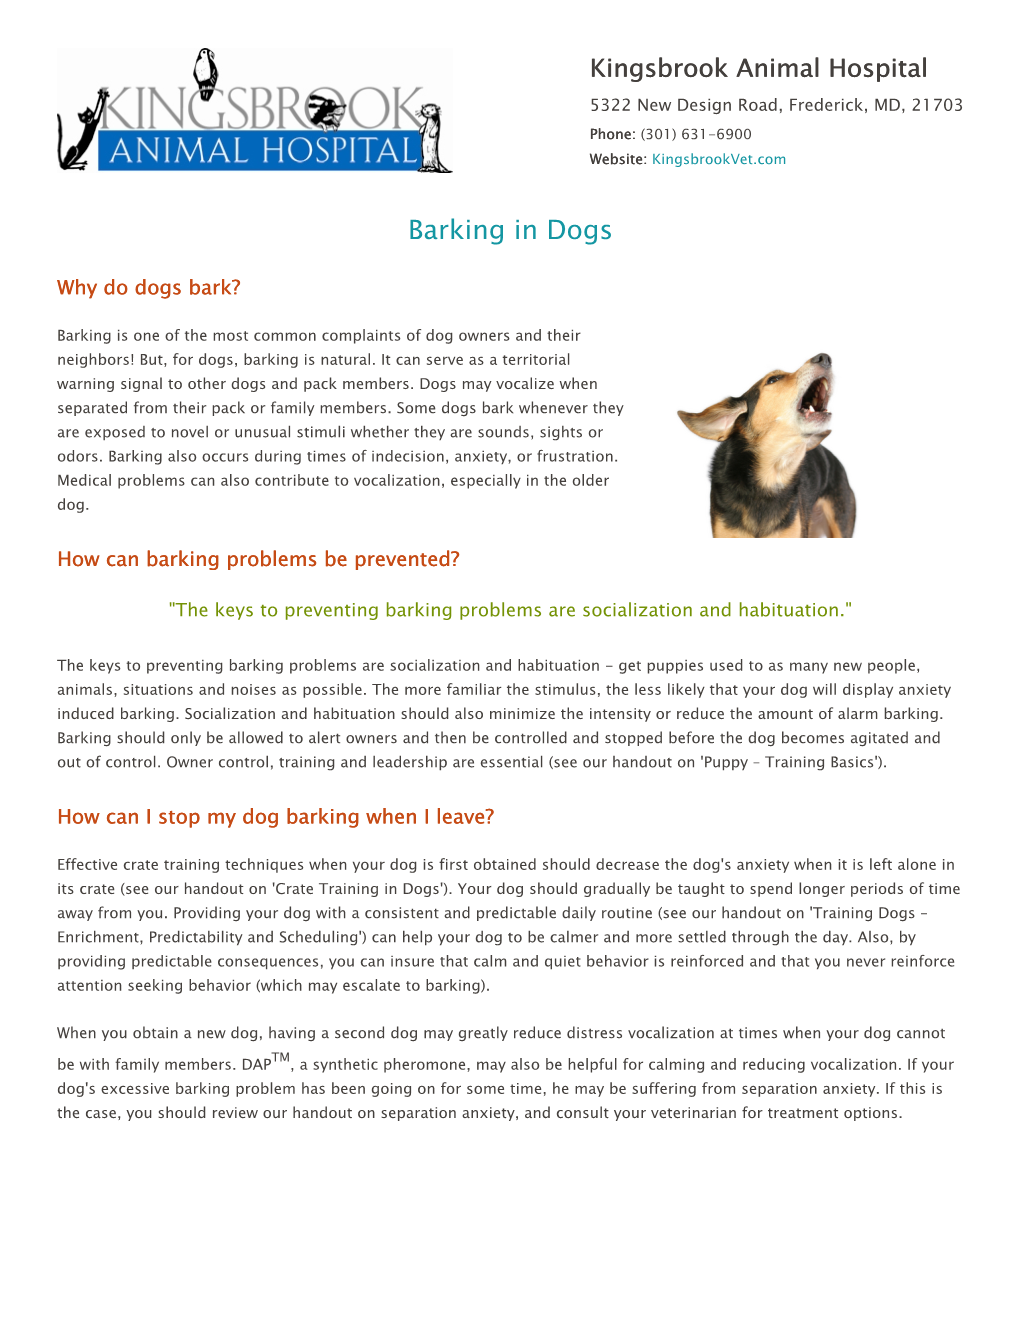 Barking in Dogs – (PDF)